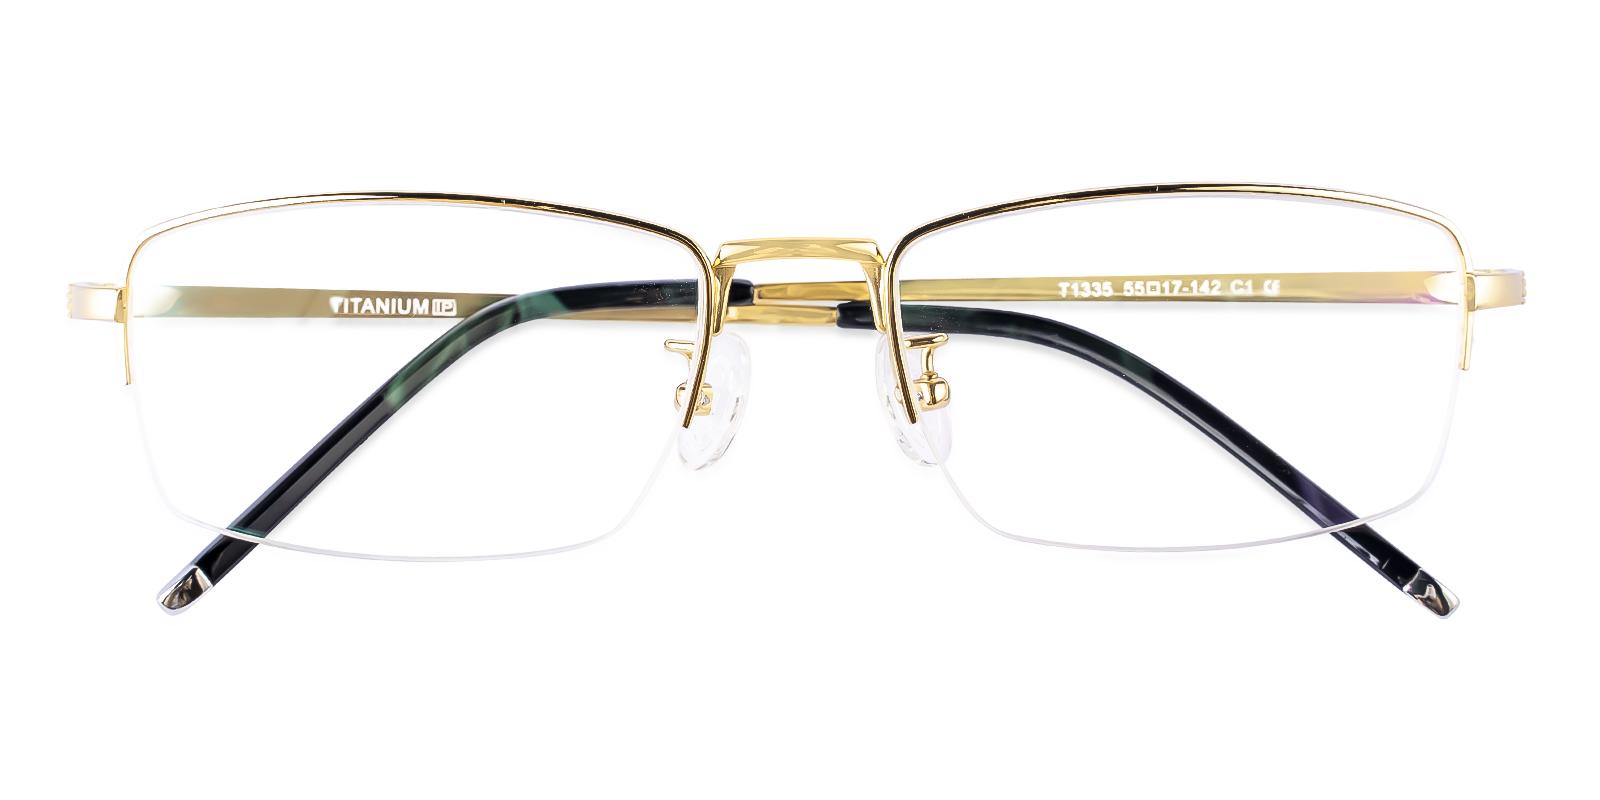 Gregics Gold Titanium Eyeglasses , NosePads Frames from ABBE Glasses